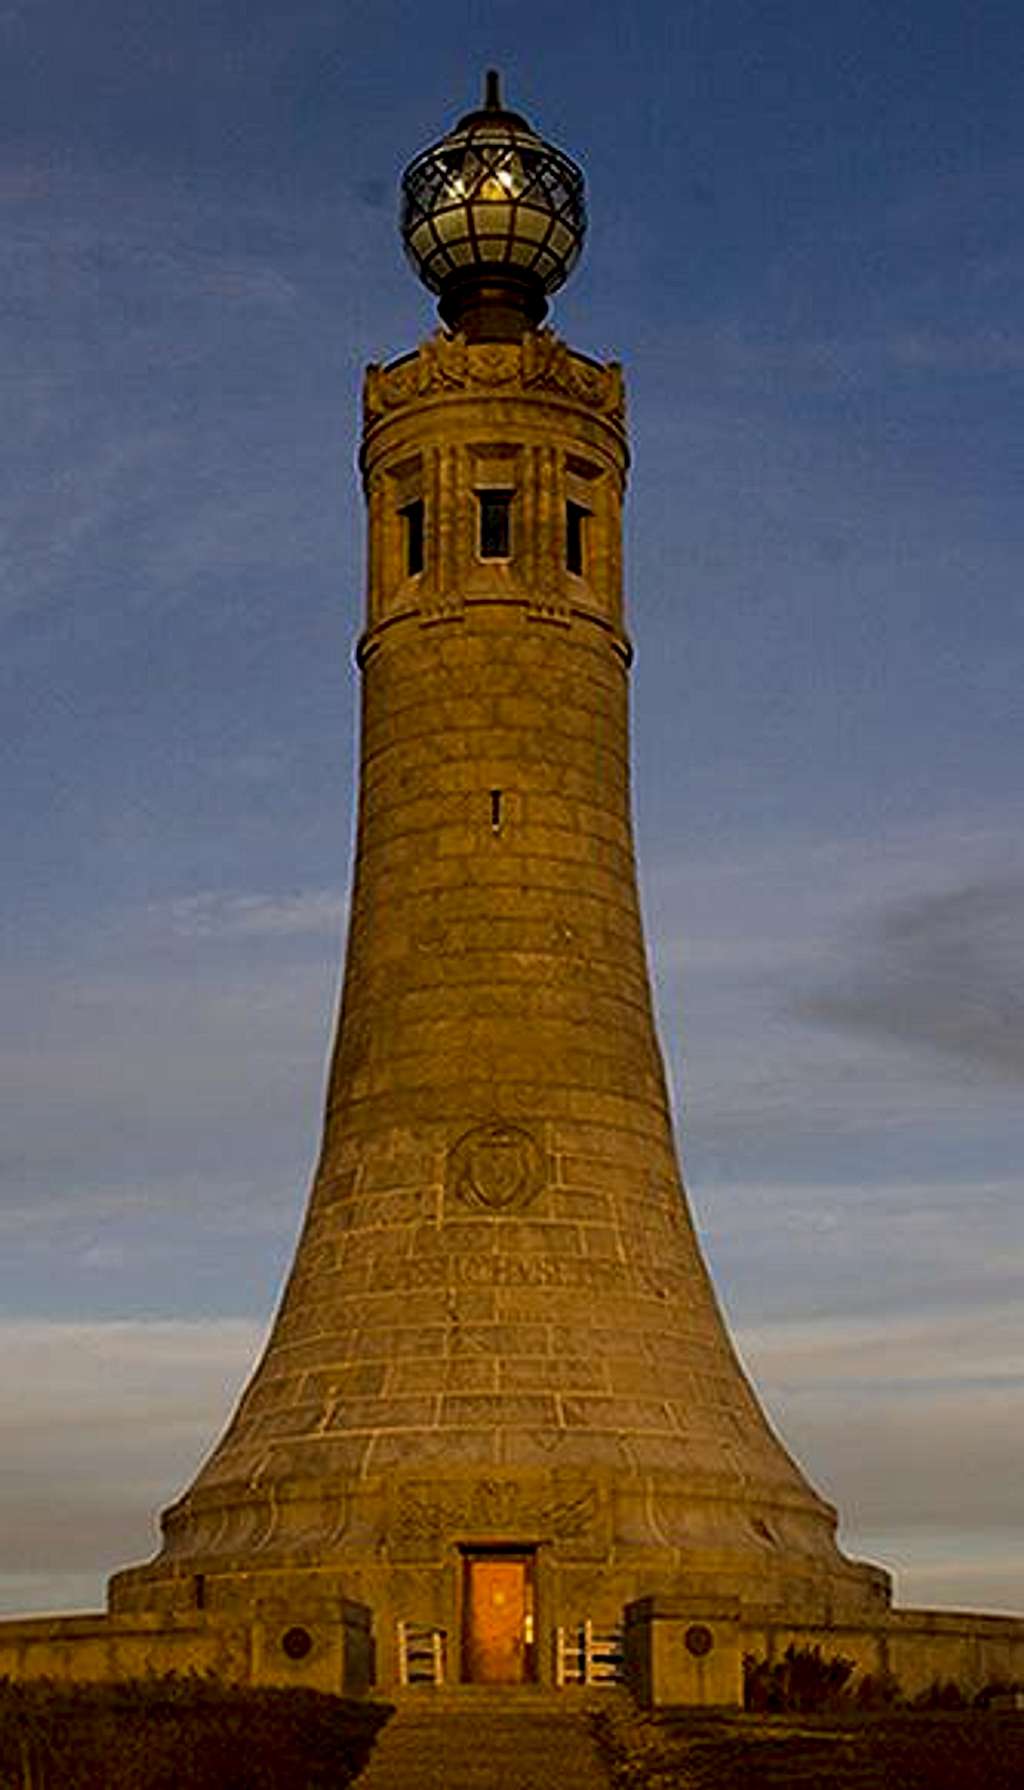 Veteran's War Memorial Tower